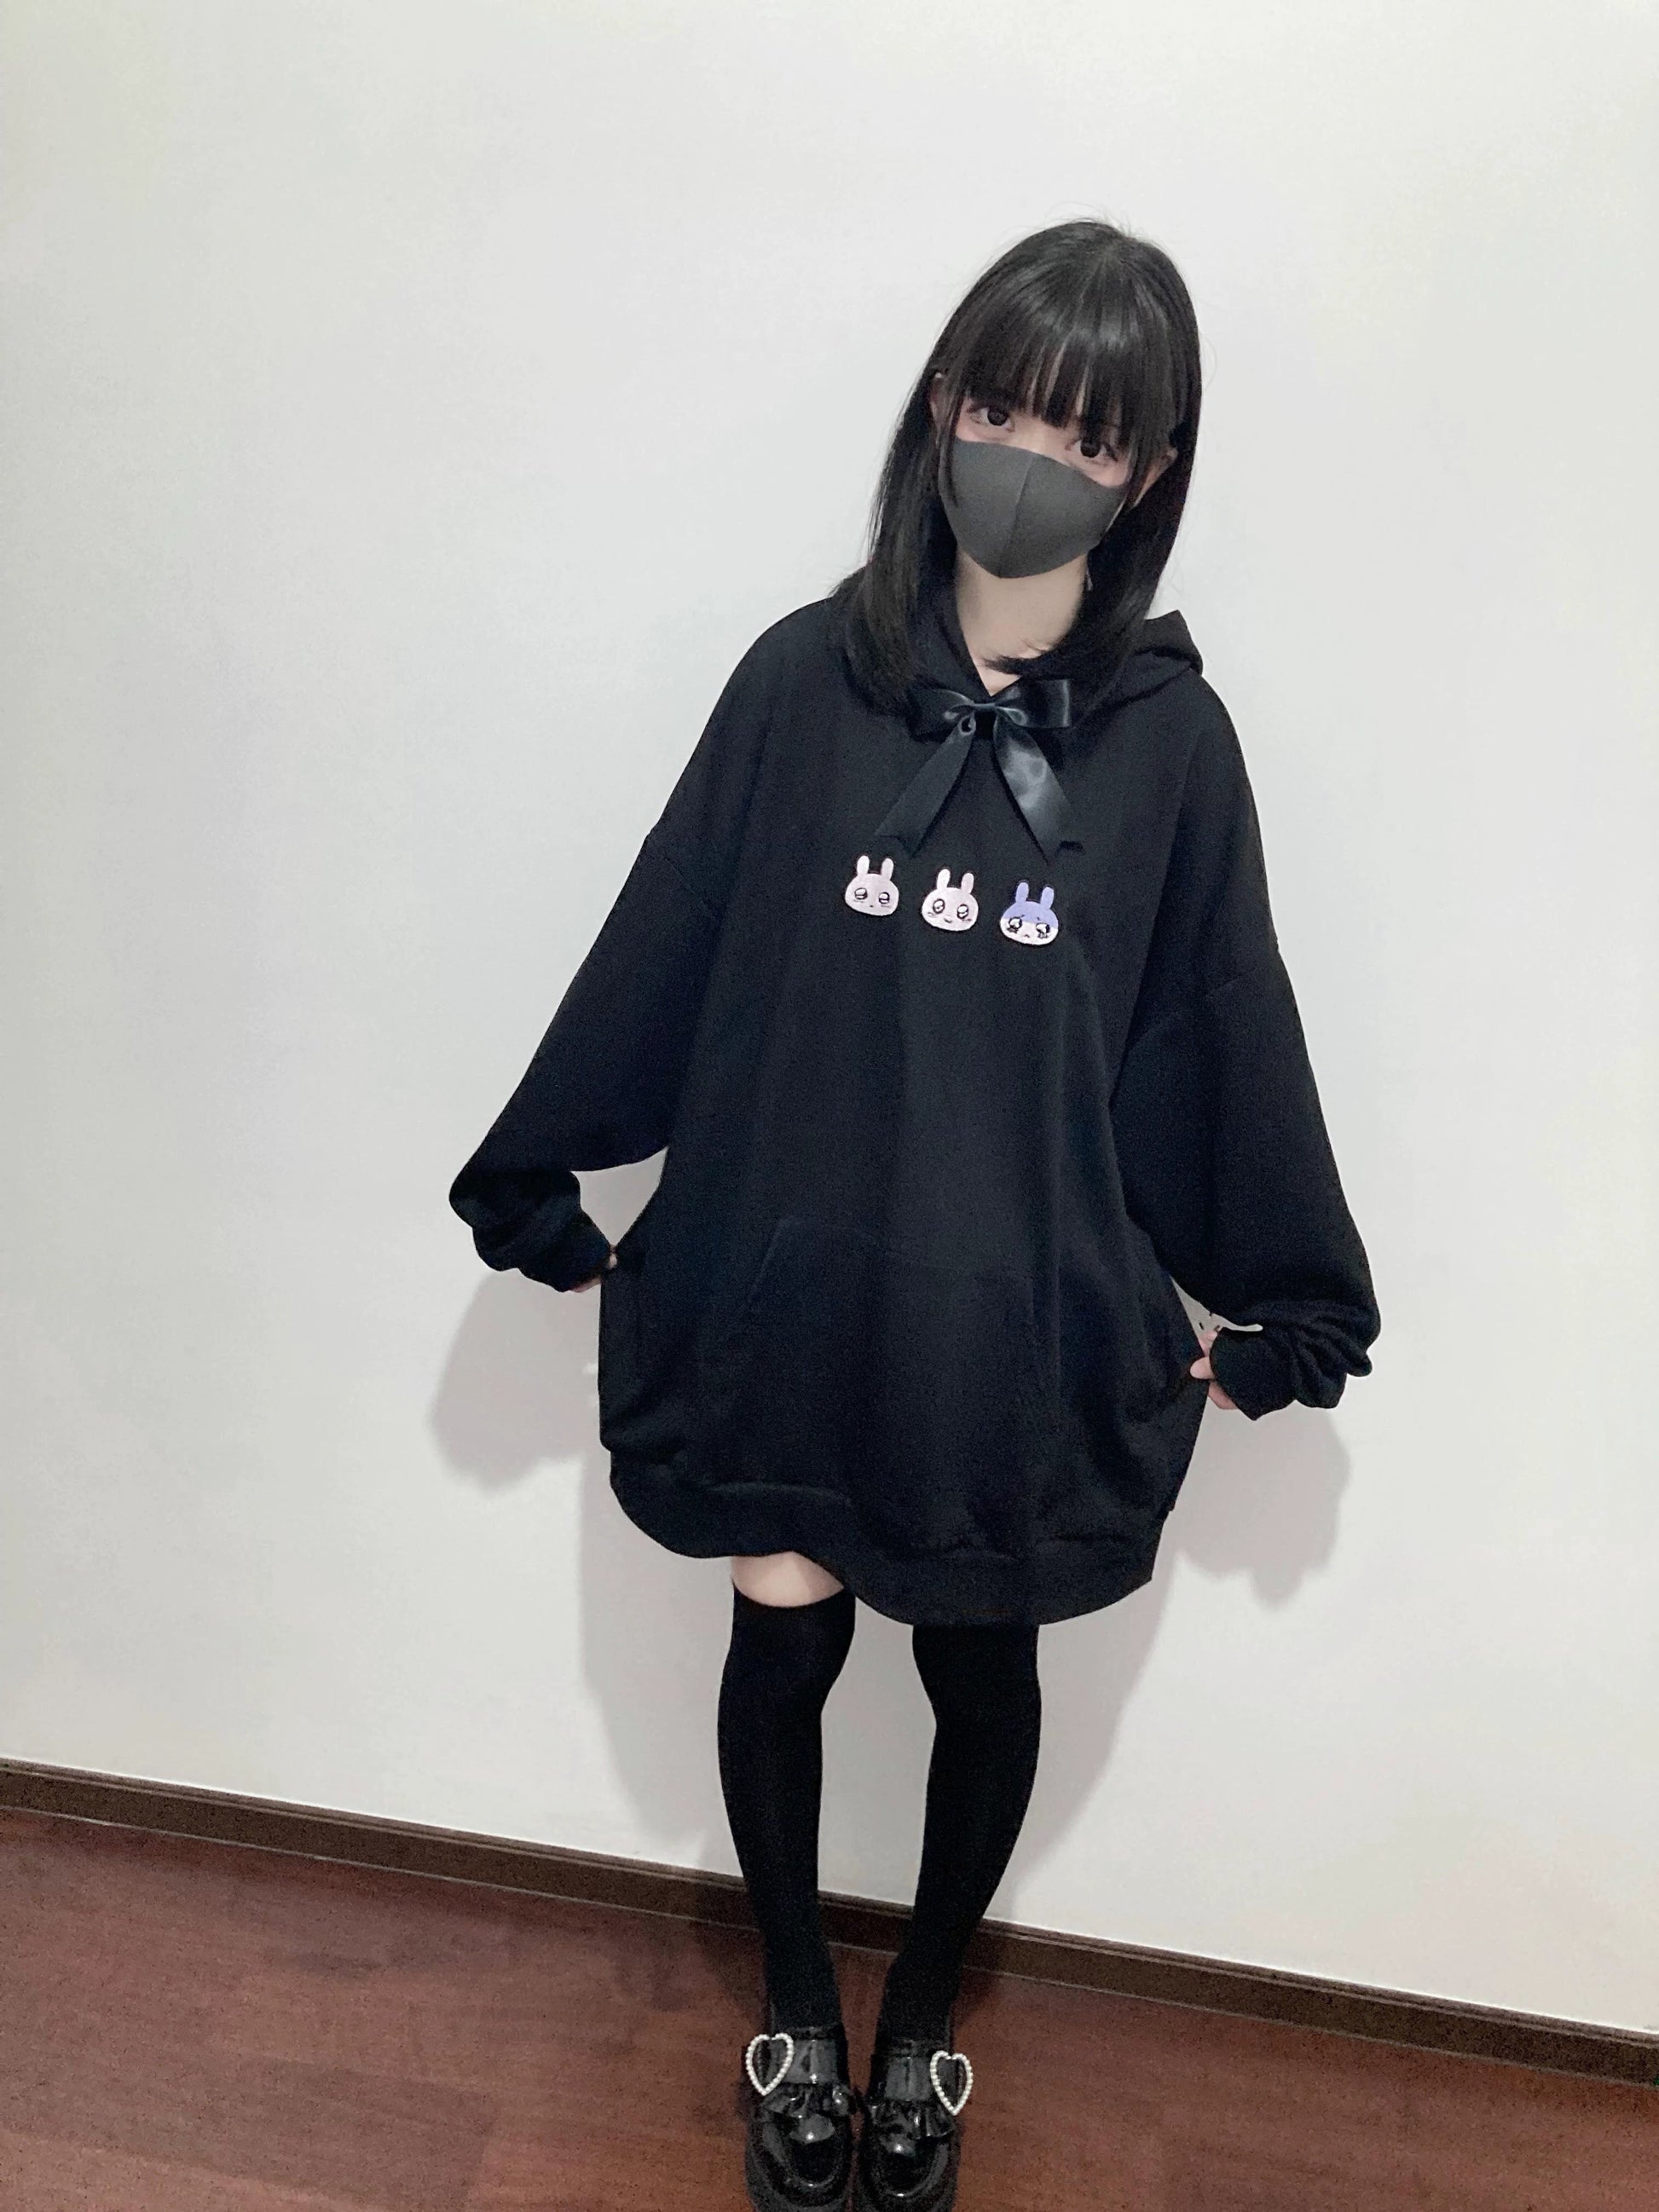 Plus Size Jirai Kei Hoodie Cute Black hooded Sweatshirt 35264:485154